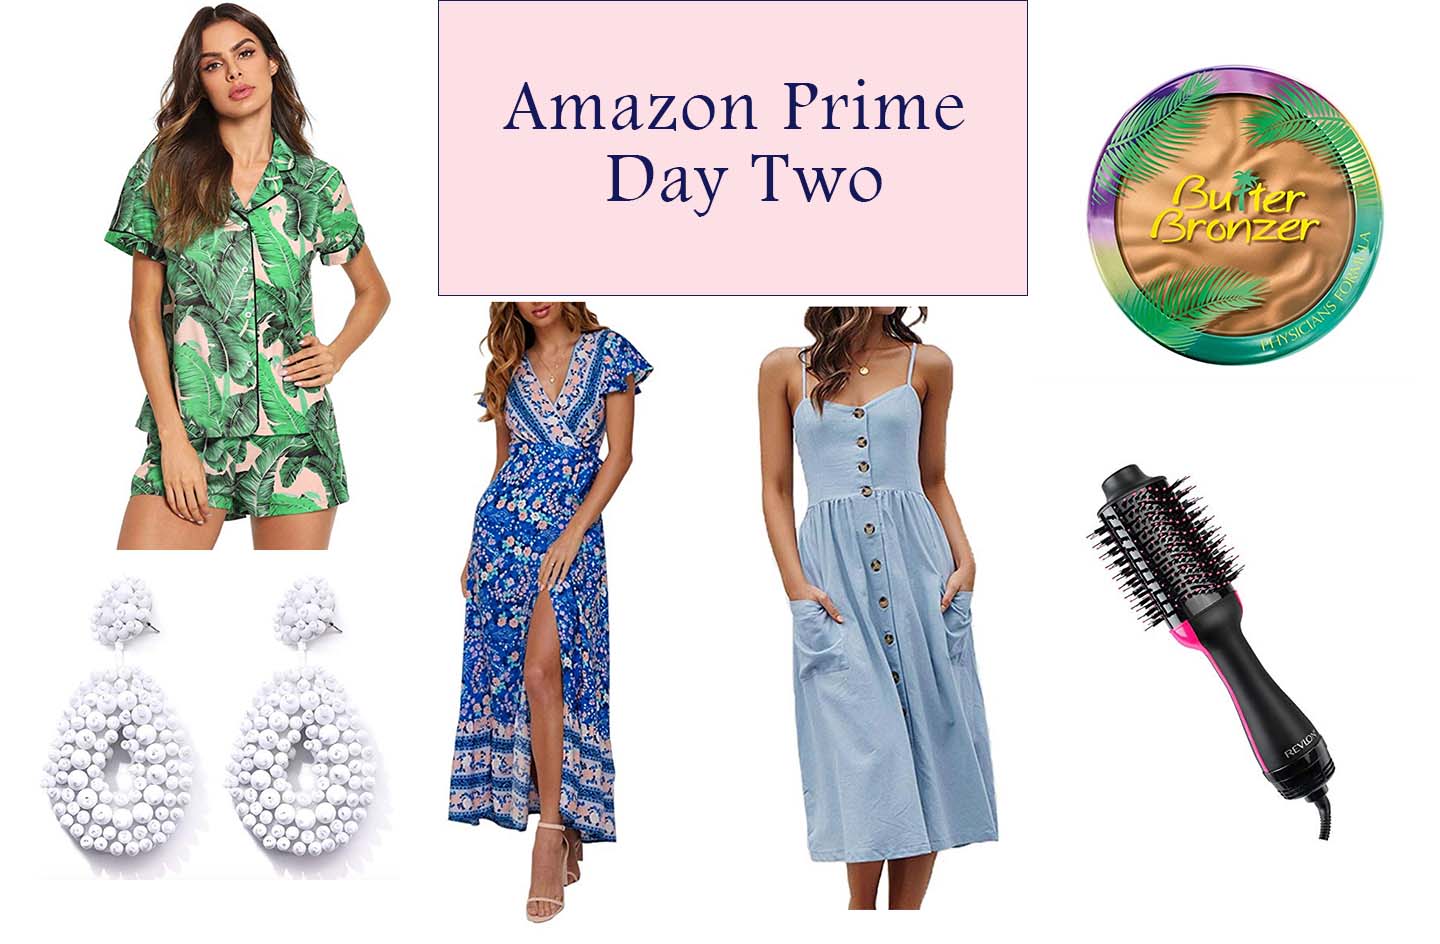 Amazon Prime Day Two